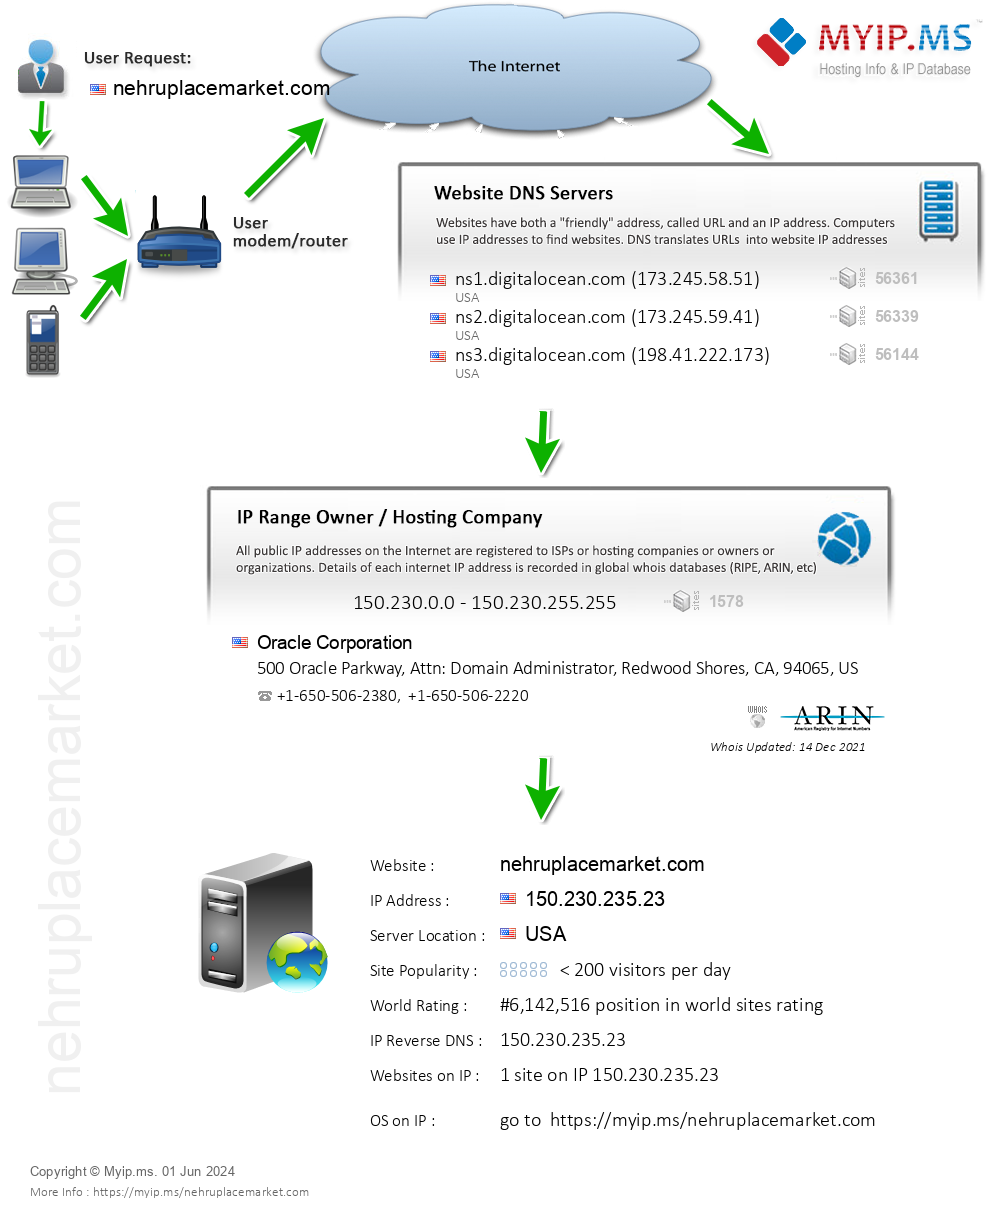 Nehruplacemarket.com - Website Hosting Visual IP Diagram